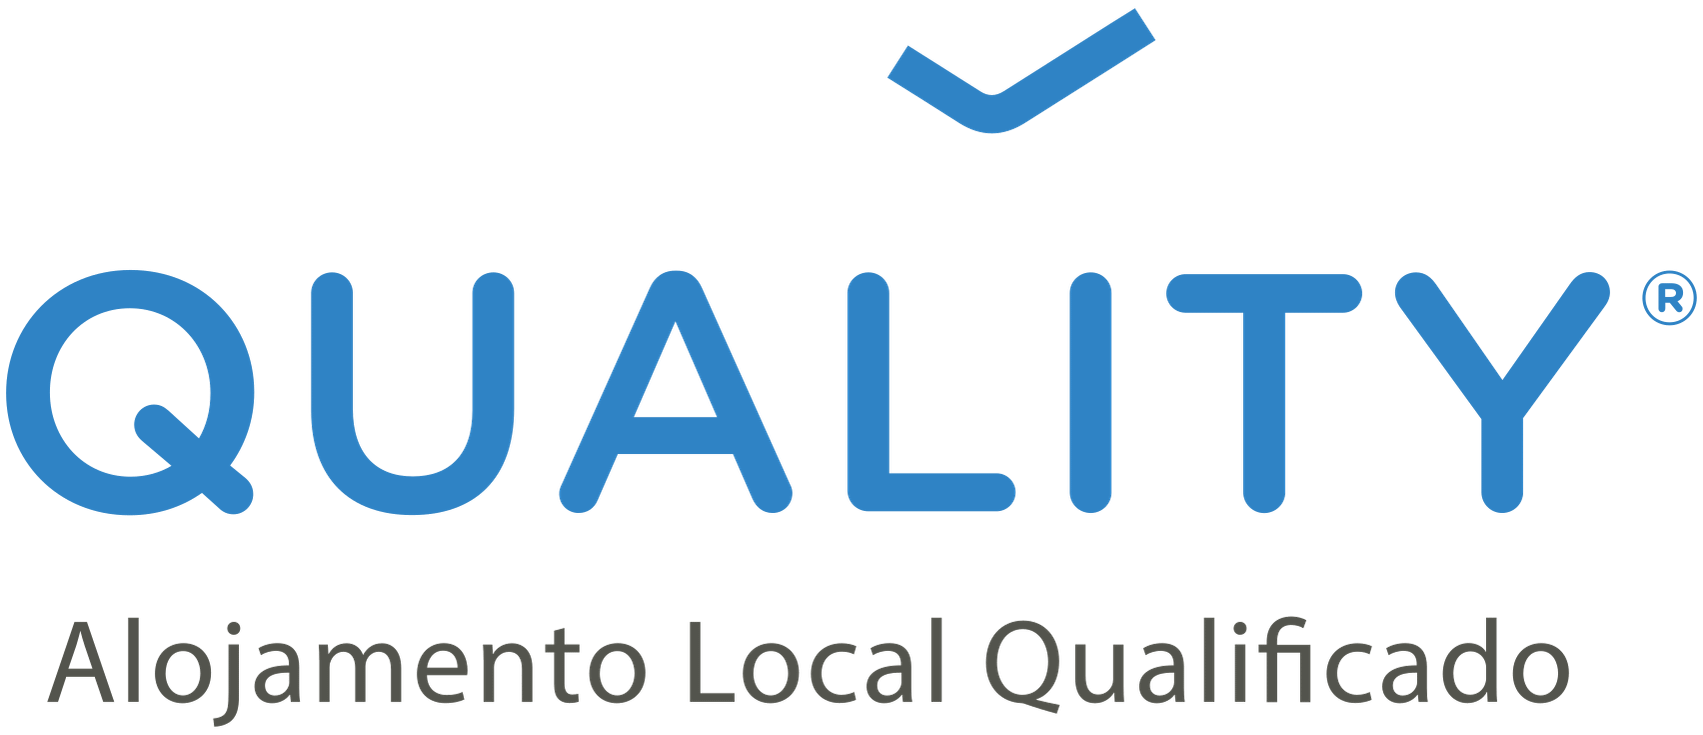 Logo QUALITY